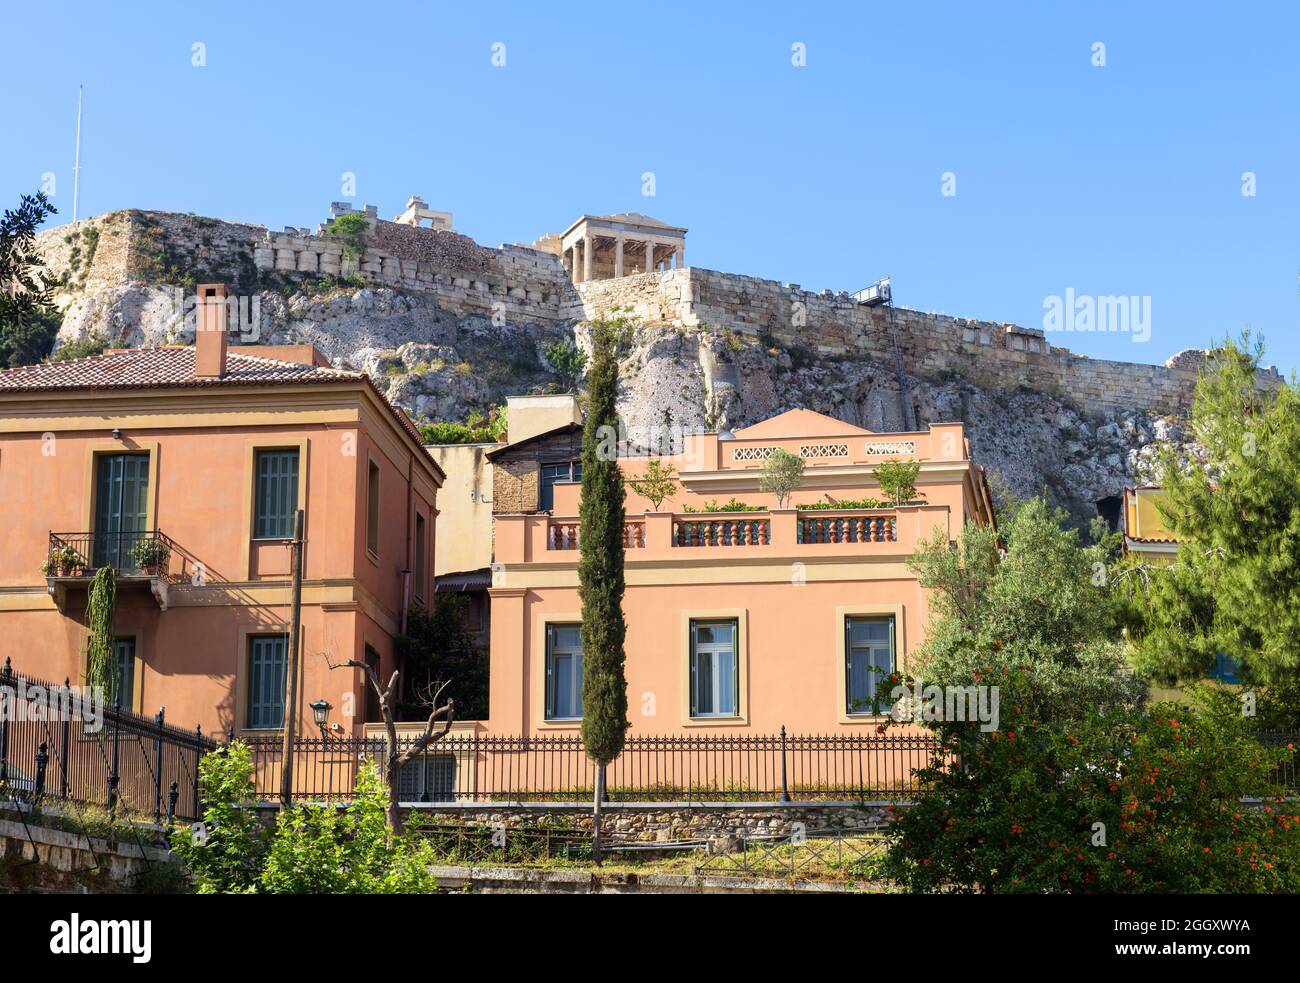 La Acrópolis se eleva sobre casas en el distrito de Plaka, Atenas, Grecia, Europa. Este lugar es una atracción turística de Atenas. Vista del monumento internacional en A Foto de stock